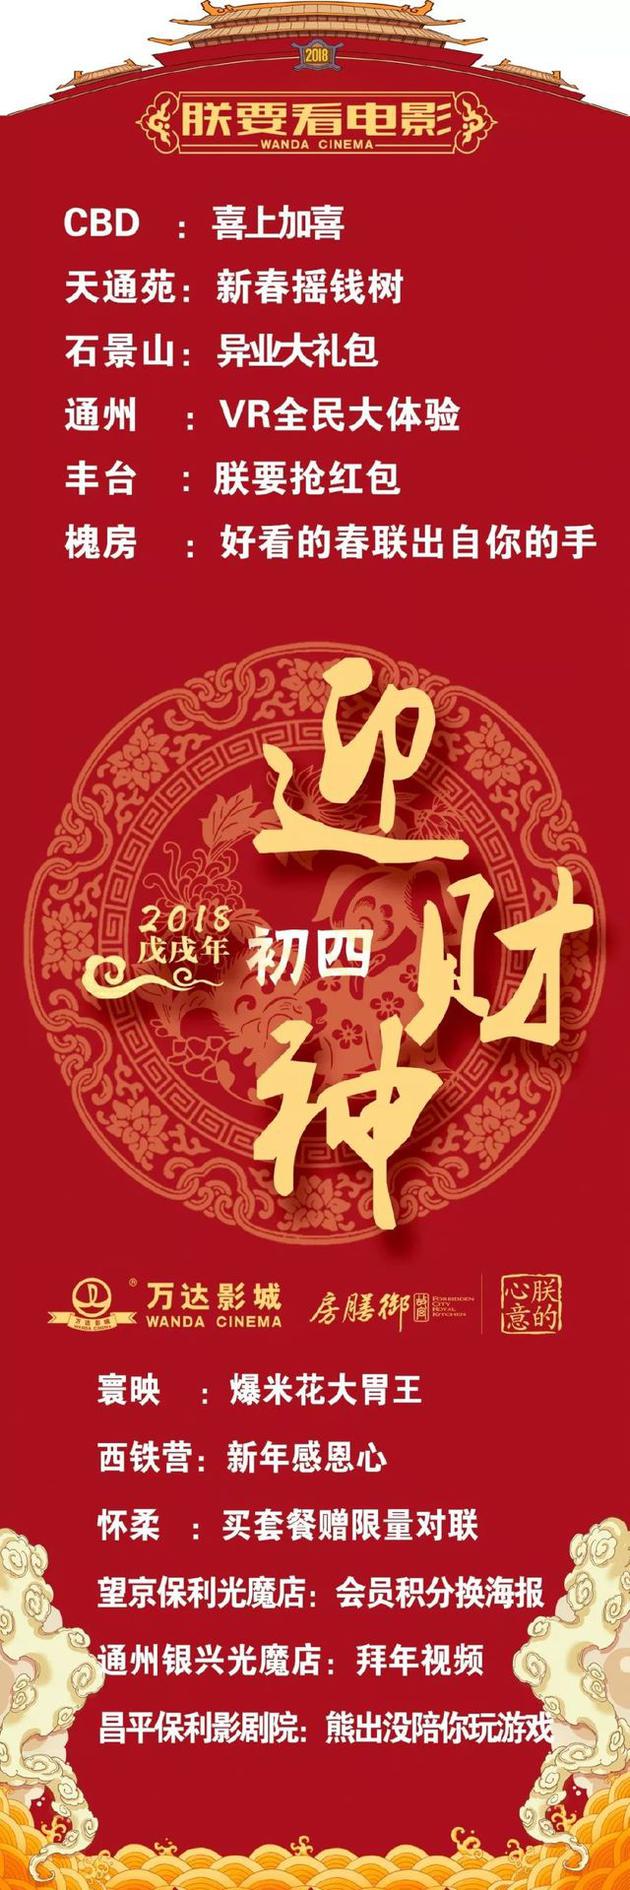 北京万达影城春节系列活动邀您一起“玩赚”春节